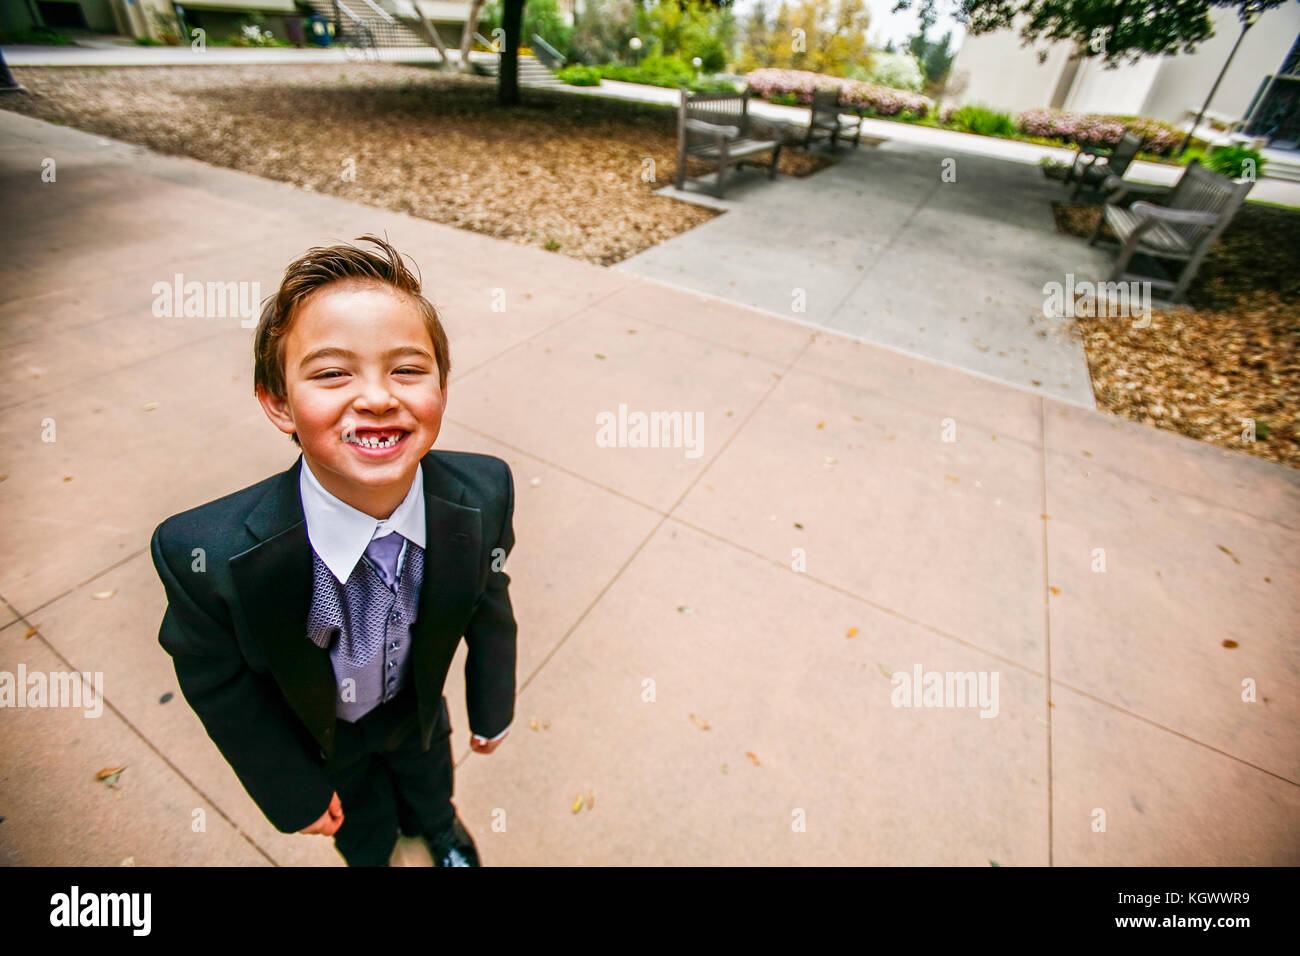 Eine nette Hochzeit Ring bearer Junge lächelnd mit einem fehlenden vorderen Zahn Stockfoto